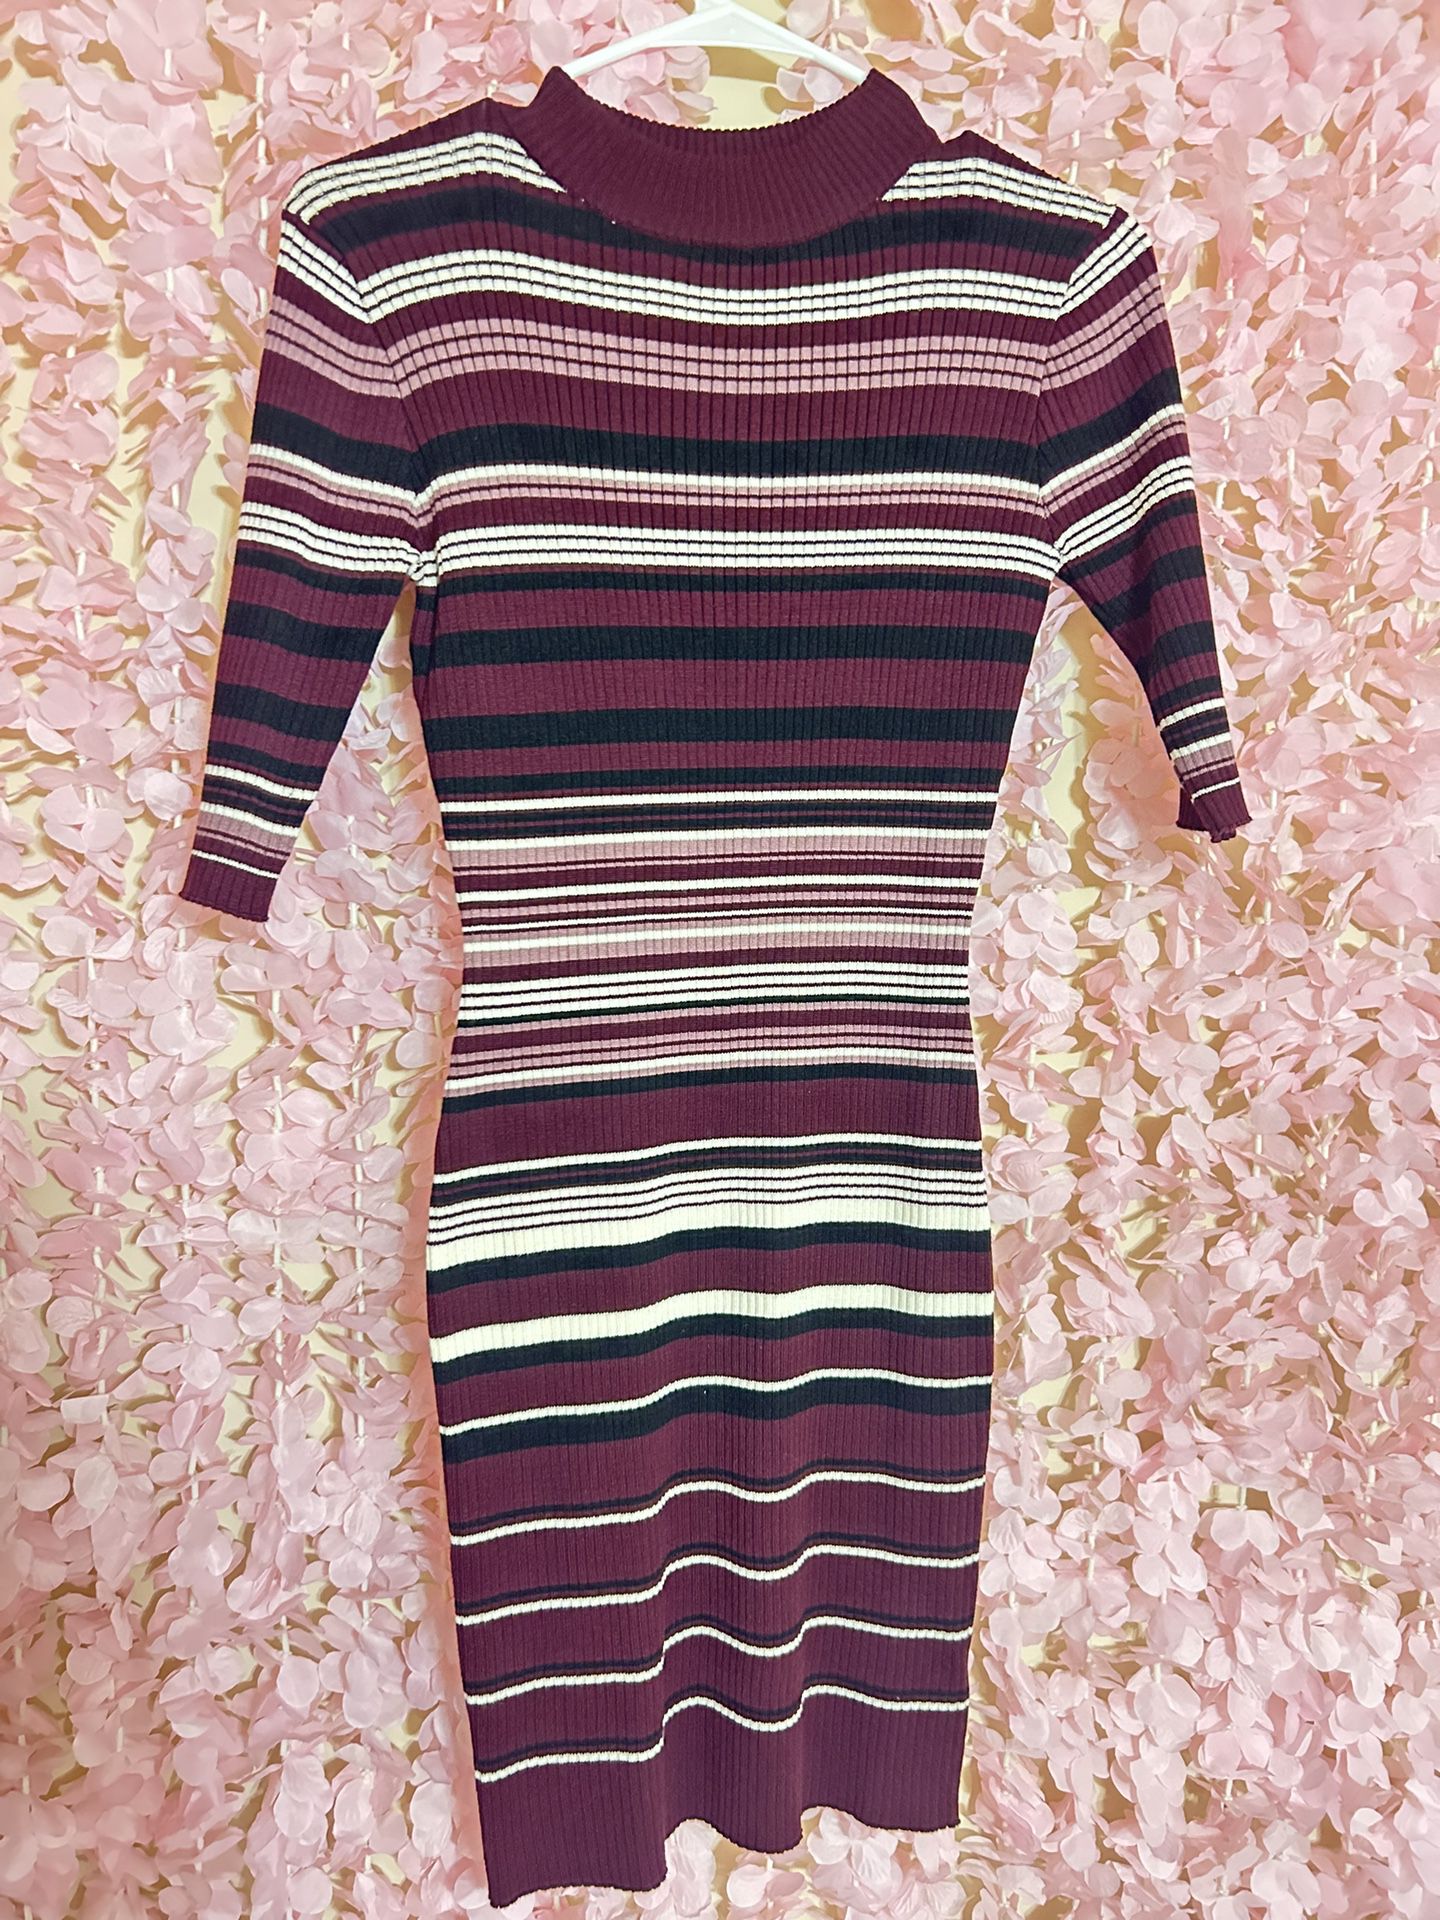 Striped Purple Colored Dress Sz L